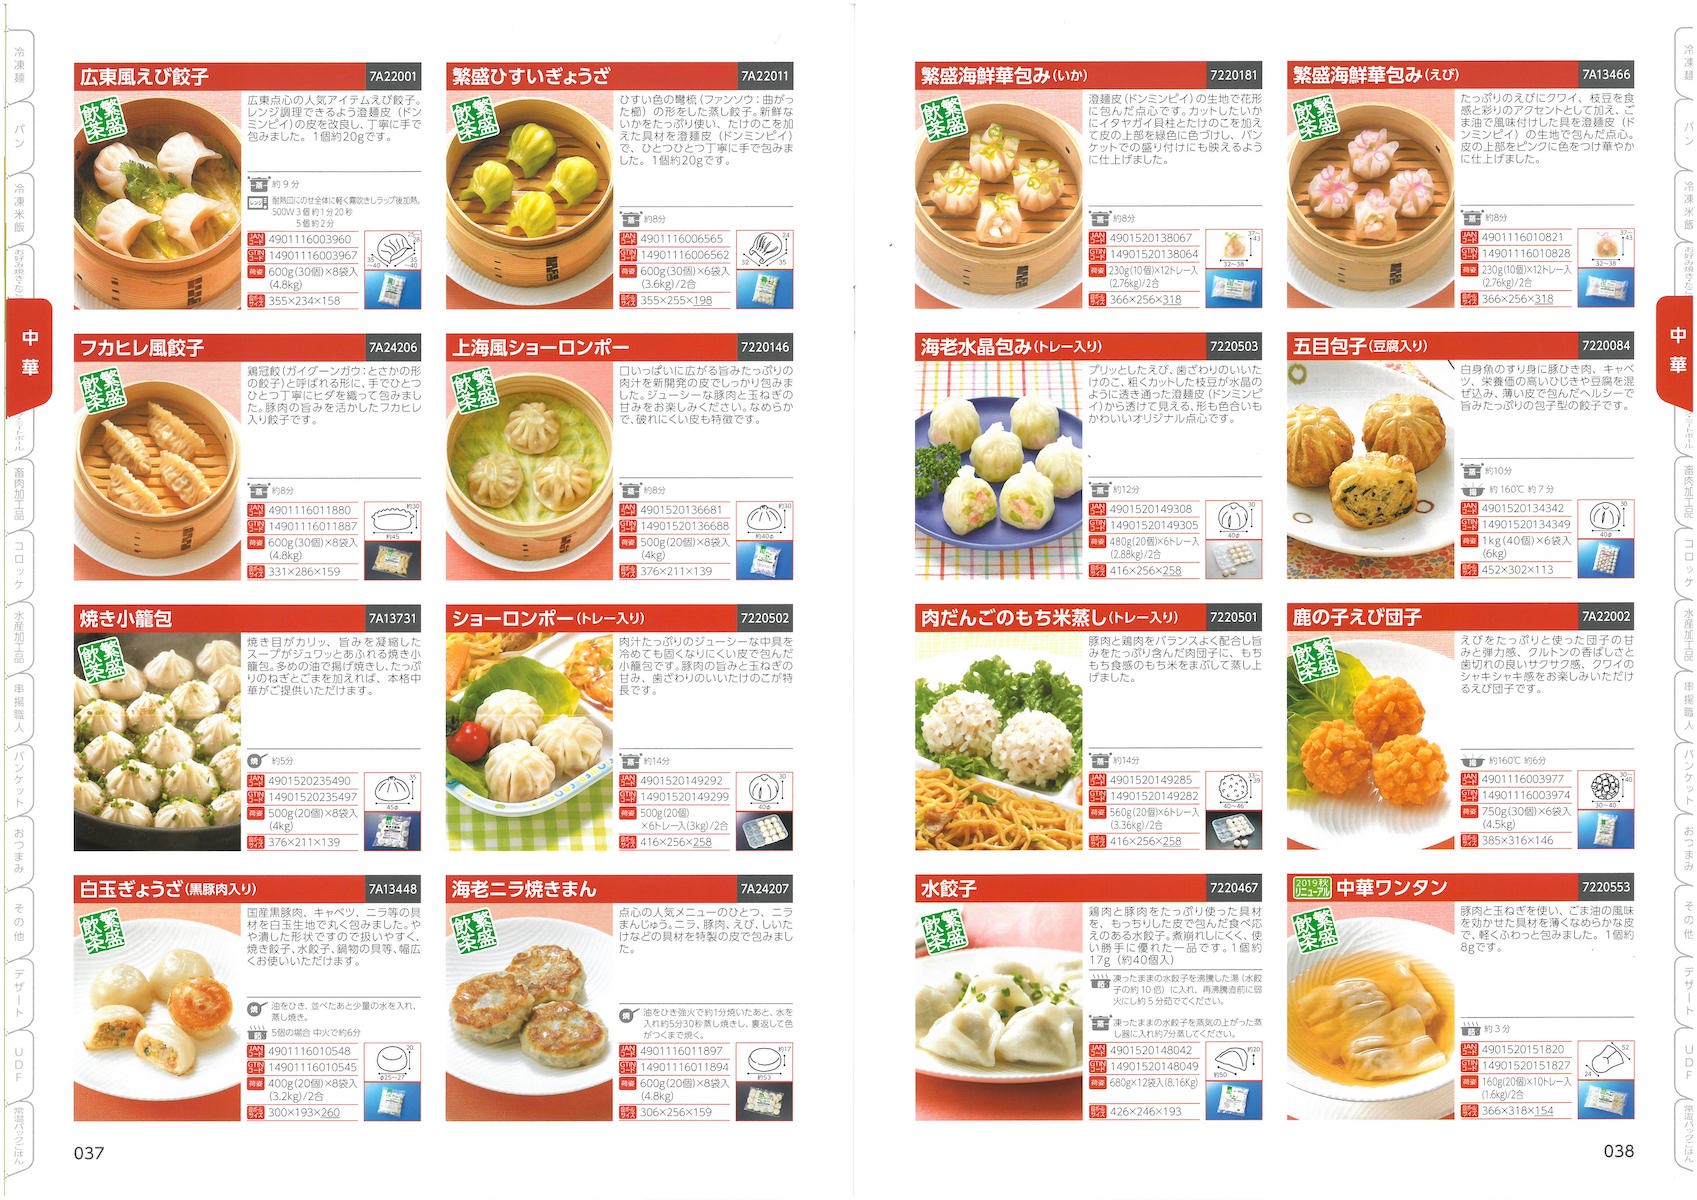 テーブルマーク2020 業務用総合カタログ | 冷凍食品カタログ.com